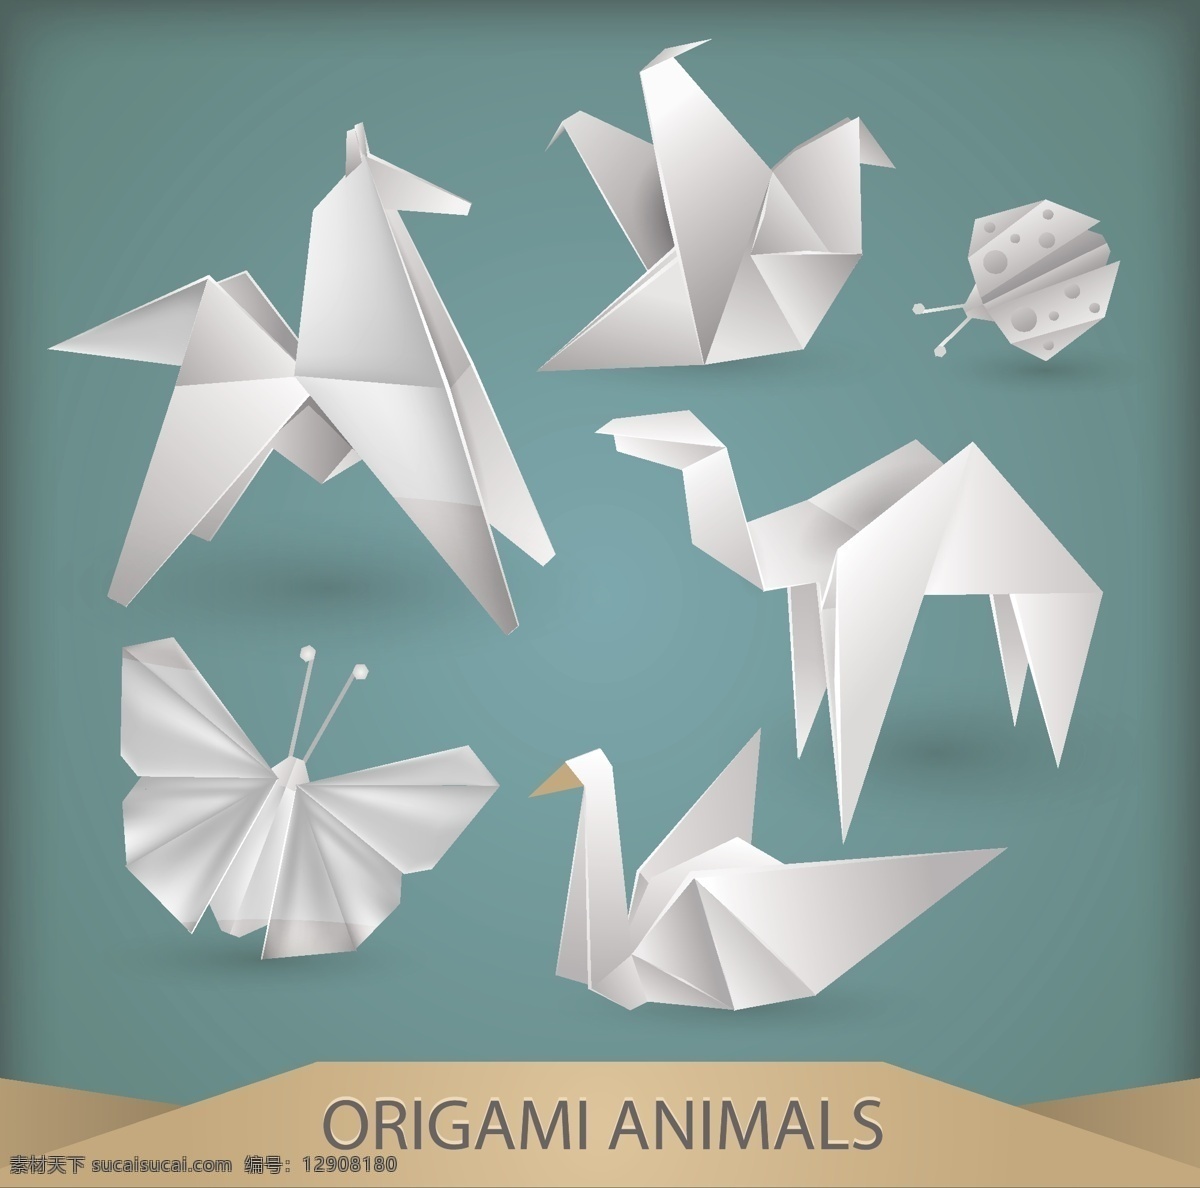 白色 折纸 多种 动物 形象 矢量 白色折纸 矢量素材